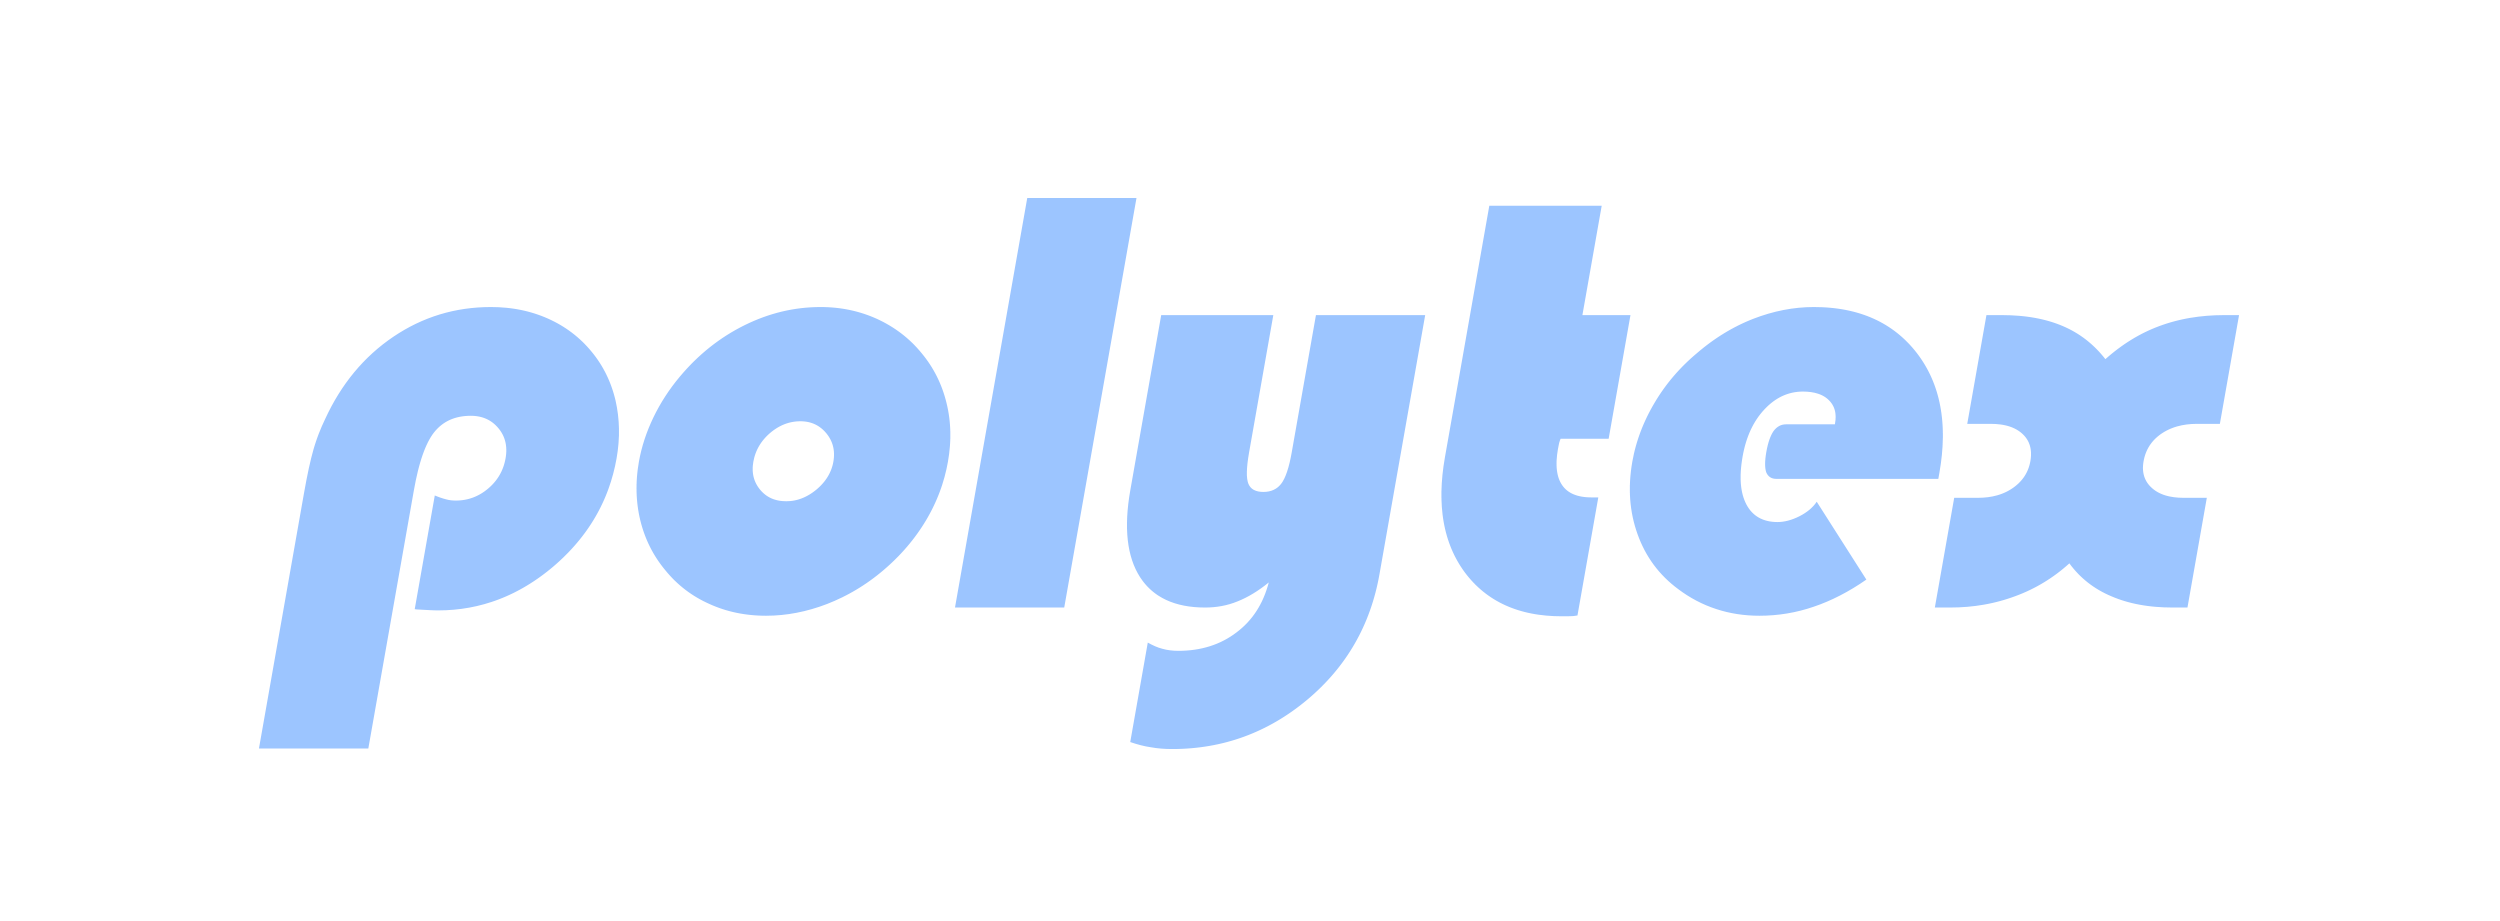 SG website-logos-light blue-slim-Polytex.png